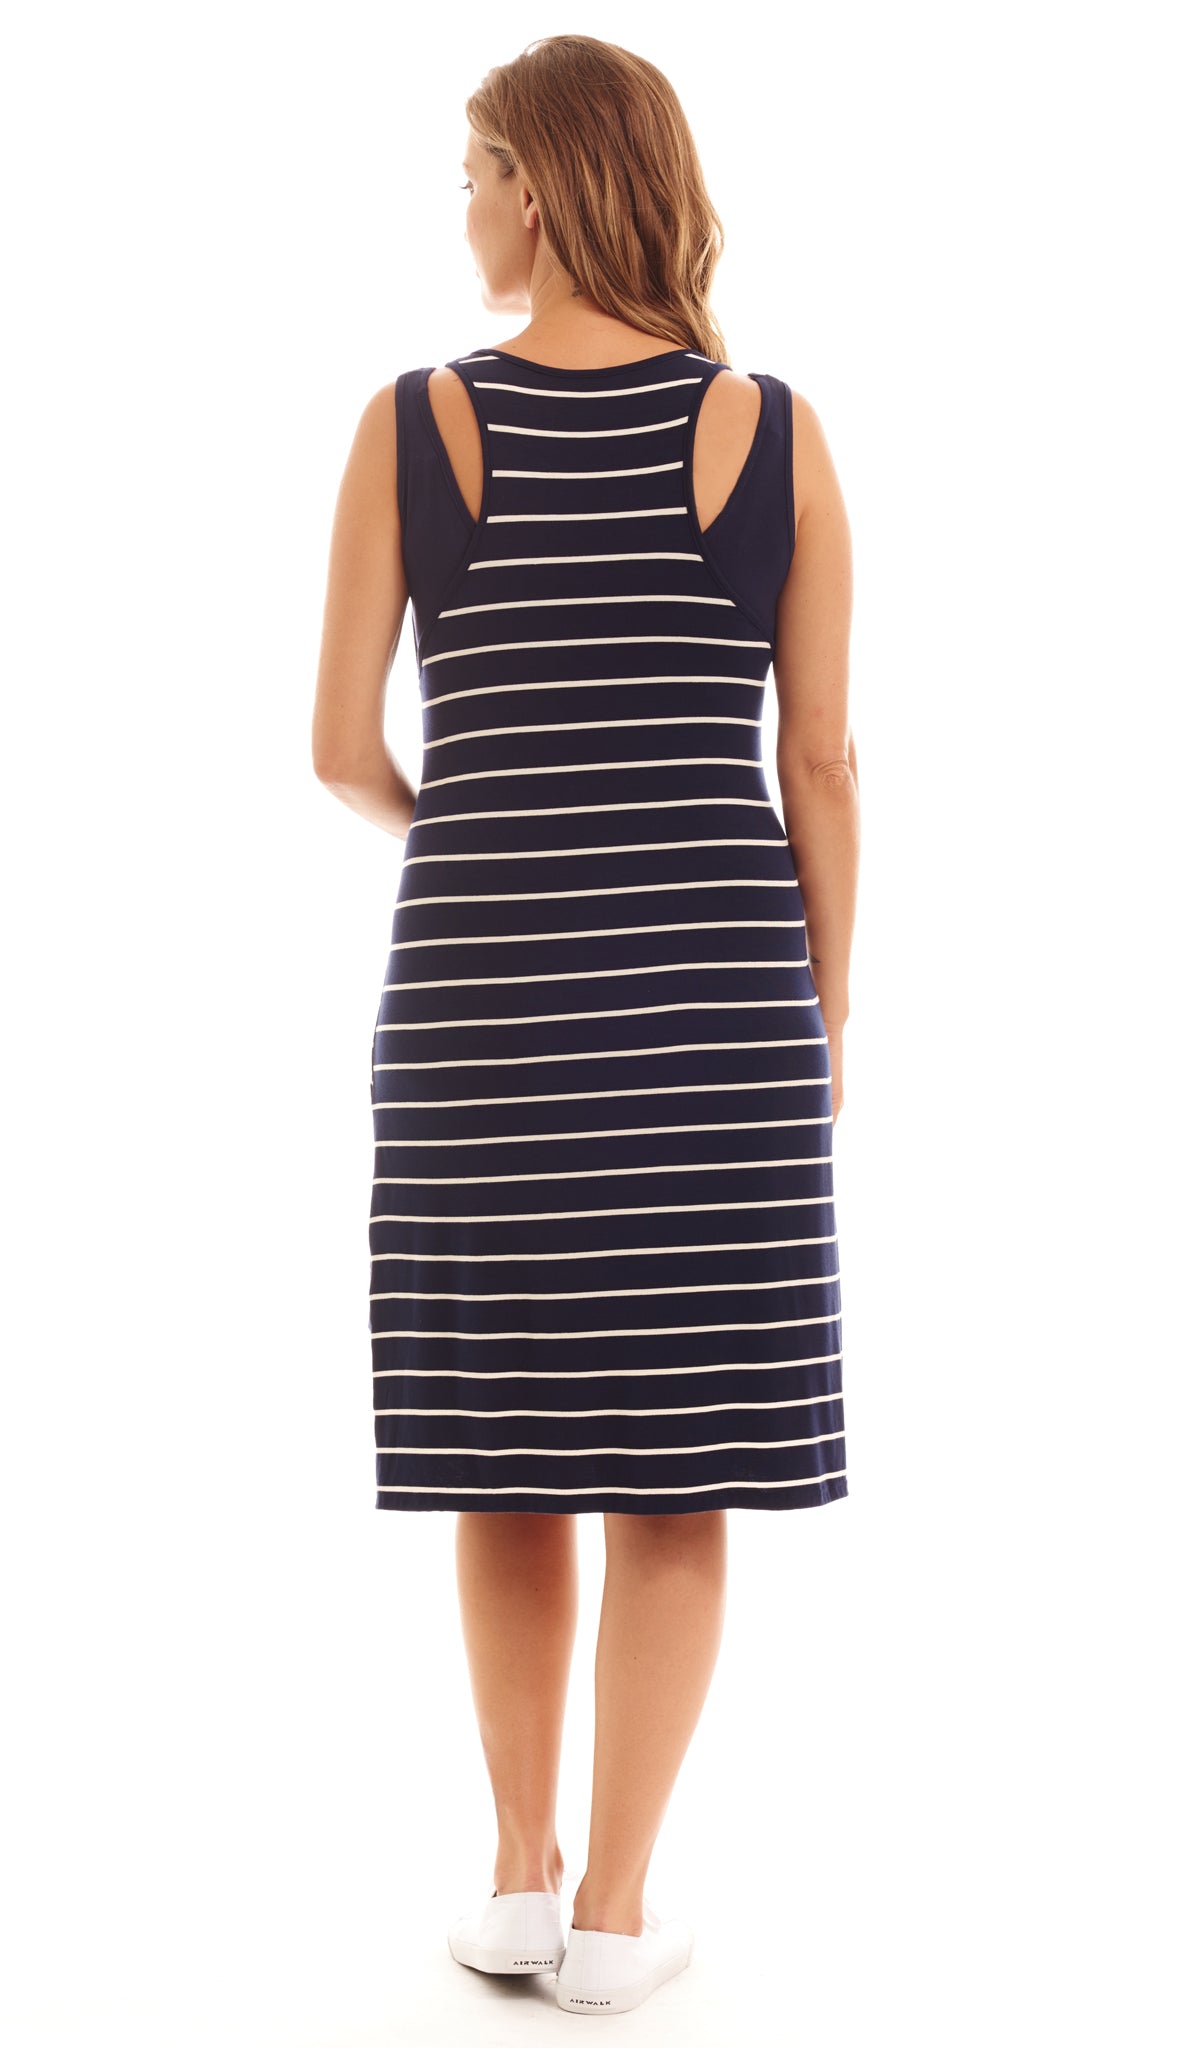 Alex 2-Piece Navy Stripe Dress - Final Sale